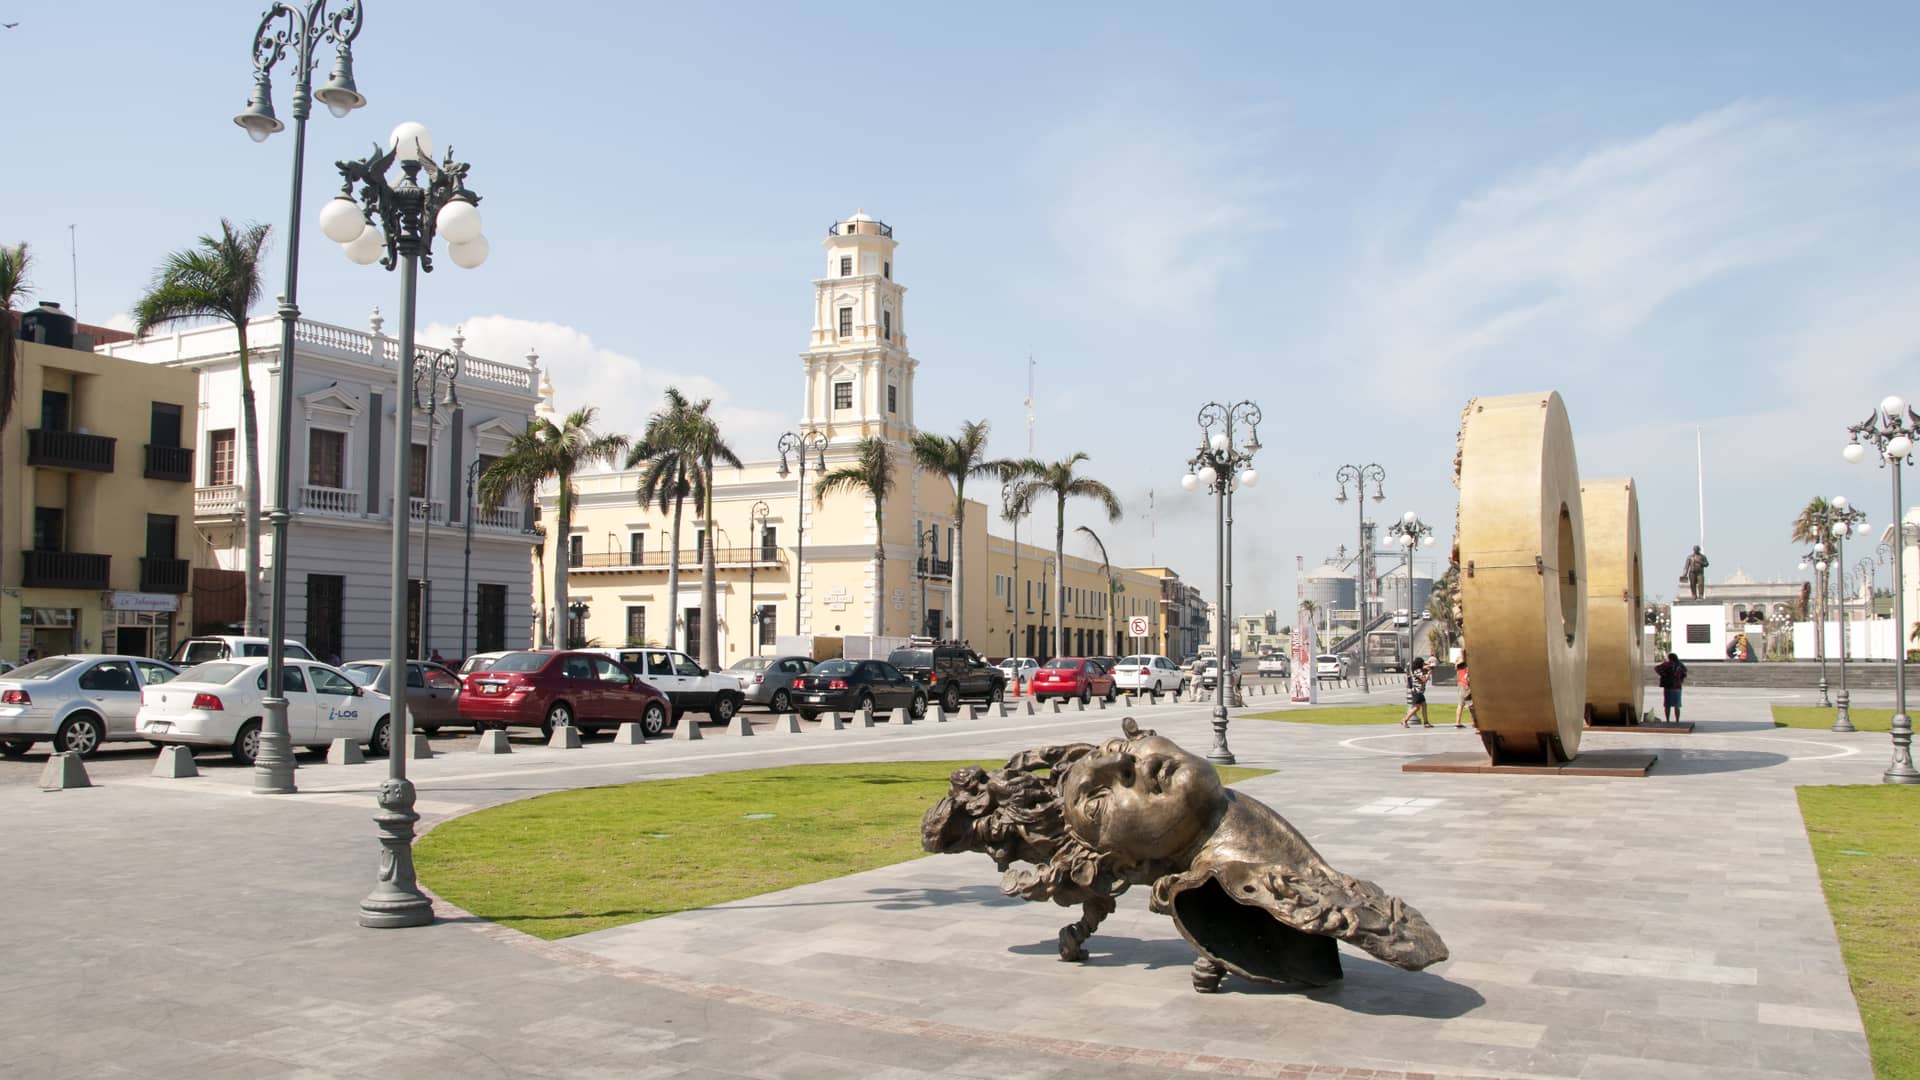 Centro urbano de Veracruz que es una ciudad que dispone de sucursales de la empresa telcel